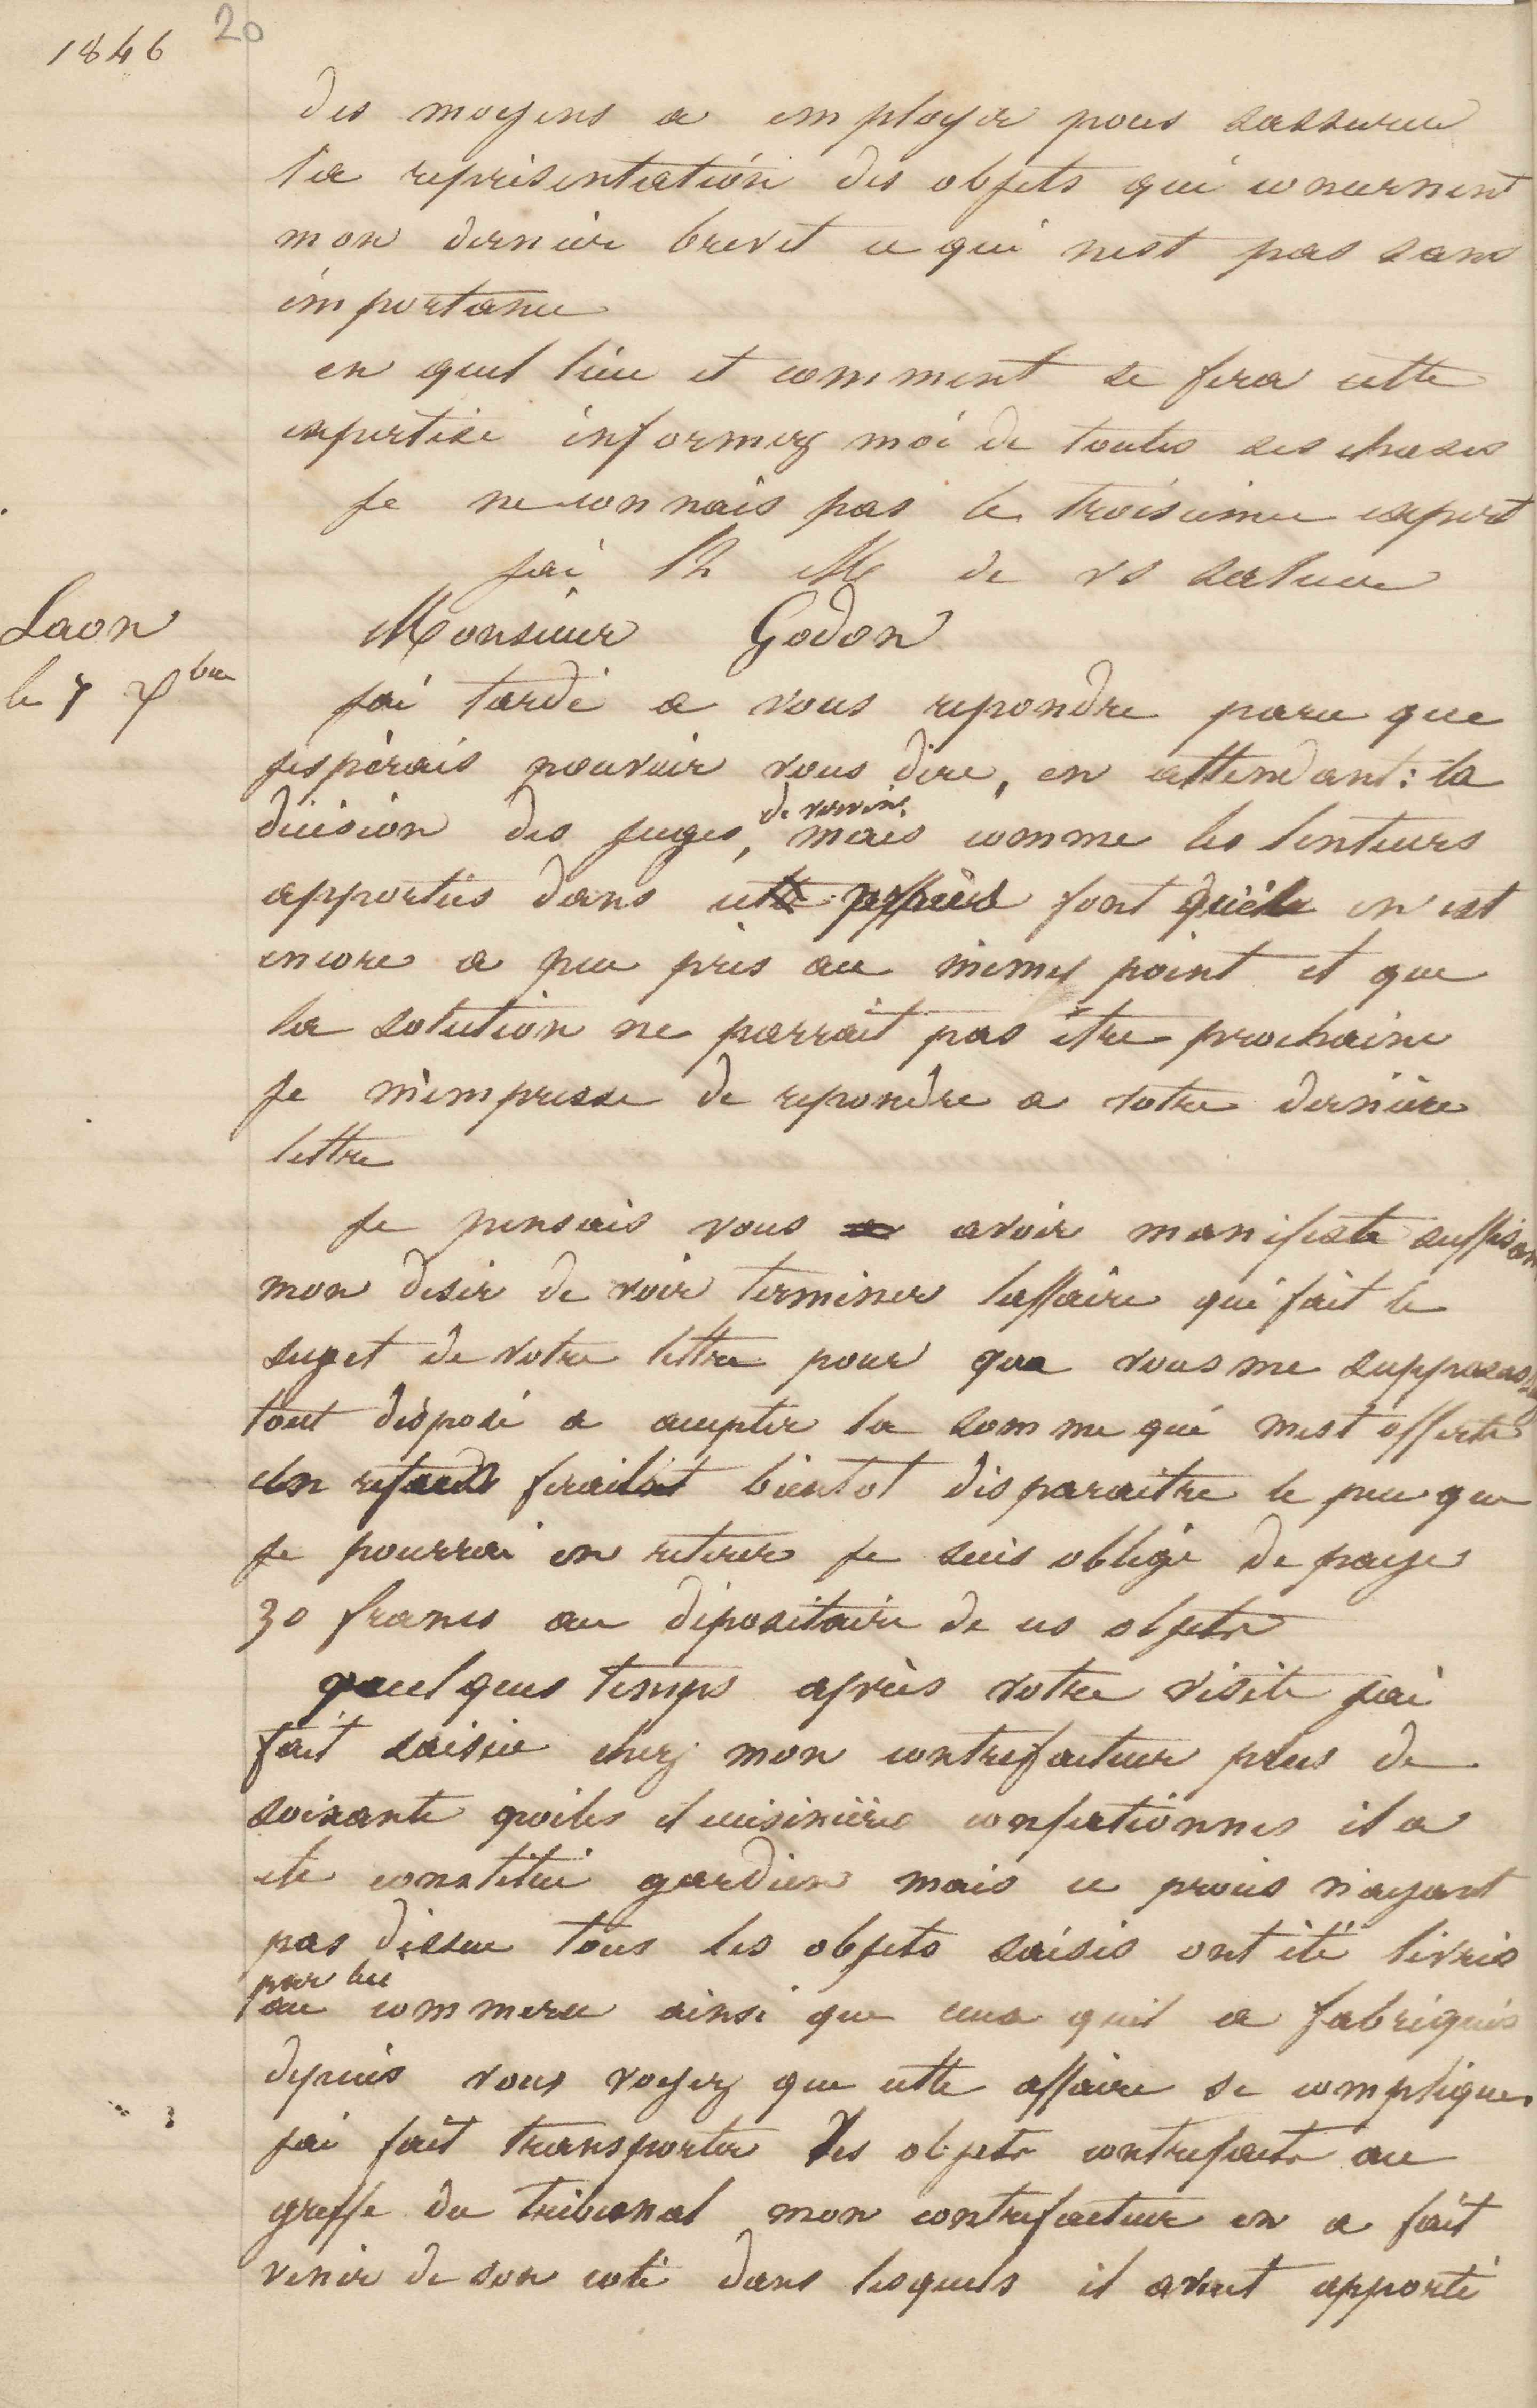 Jean-Baptiste André Godin à Jules-Charles Godon, 7 décembre 1846